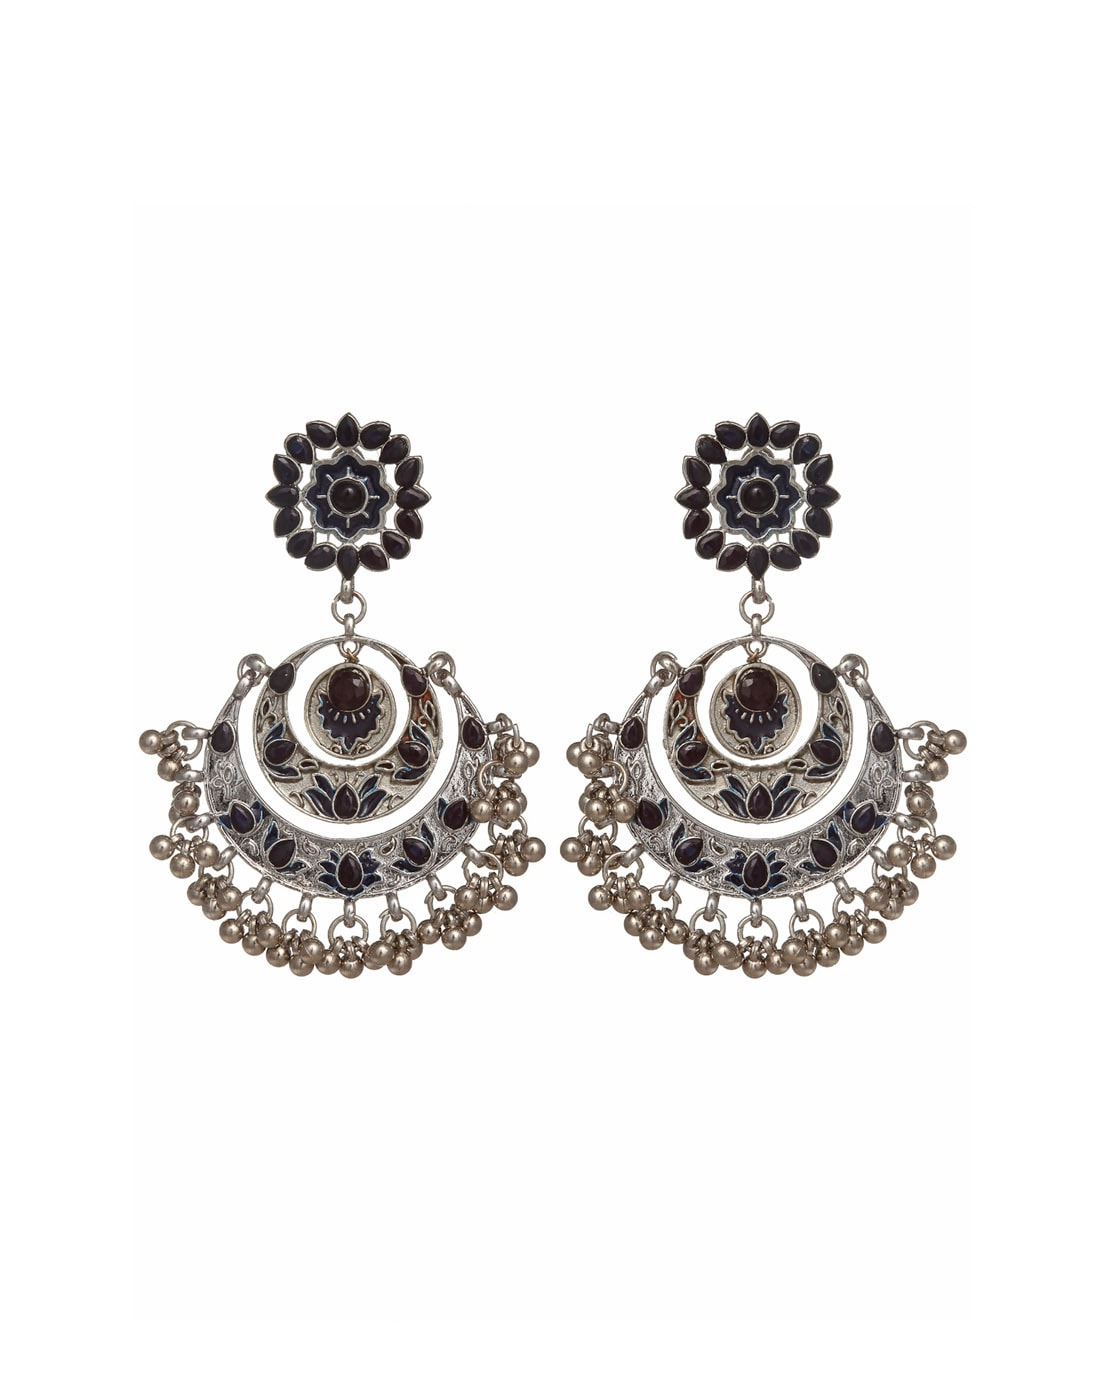 Chandbali Earrings | Urvaa | One Gram Gold Chandbali Earrings Jewellery